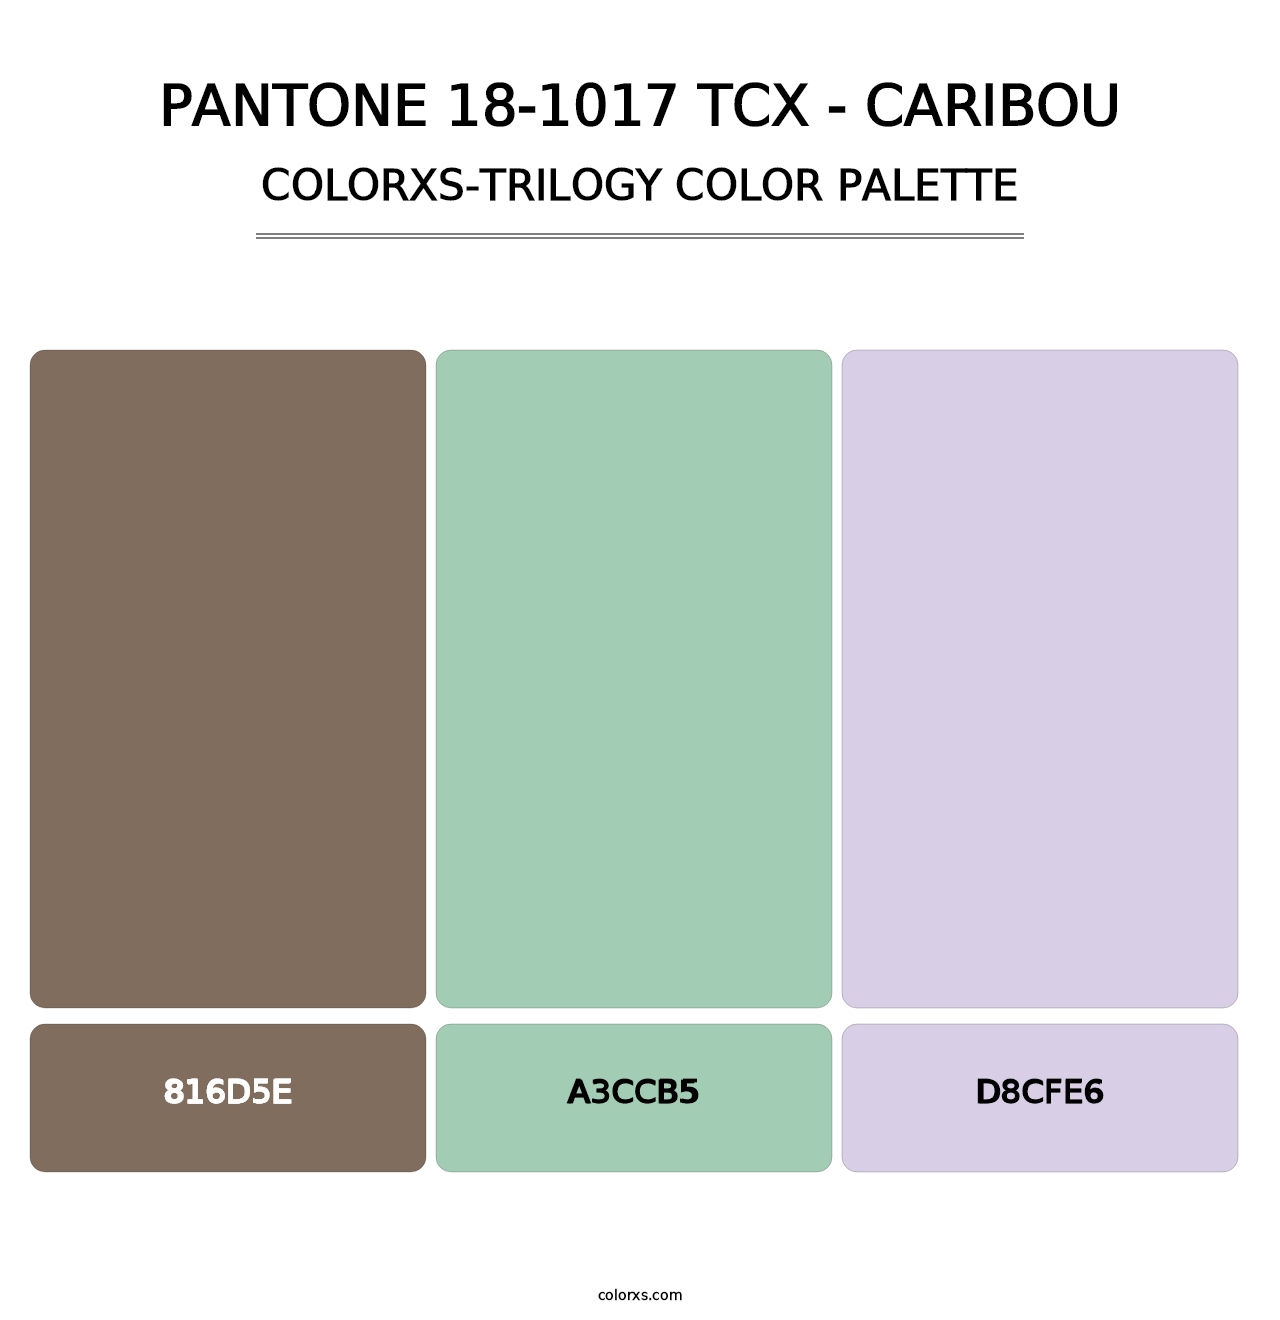 PANTONE 18-1017 TCX - Caribou - Colorxs Trilogy Palette